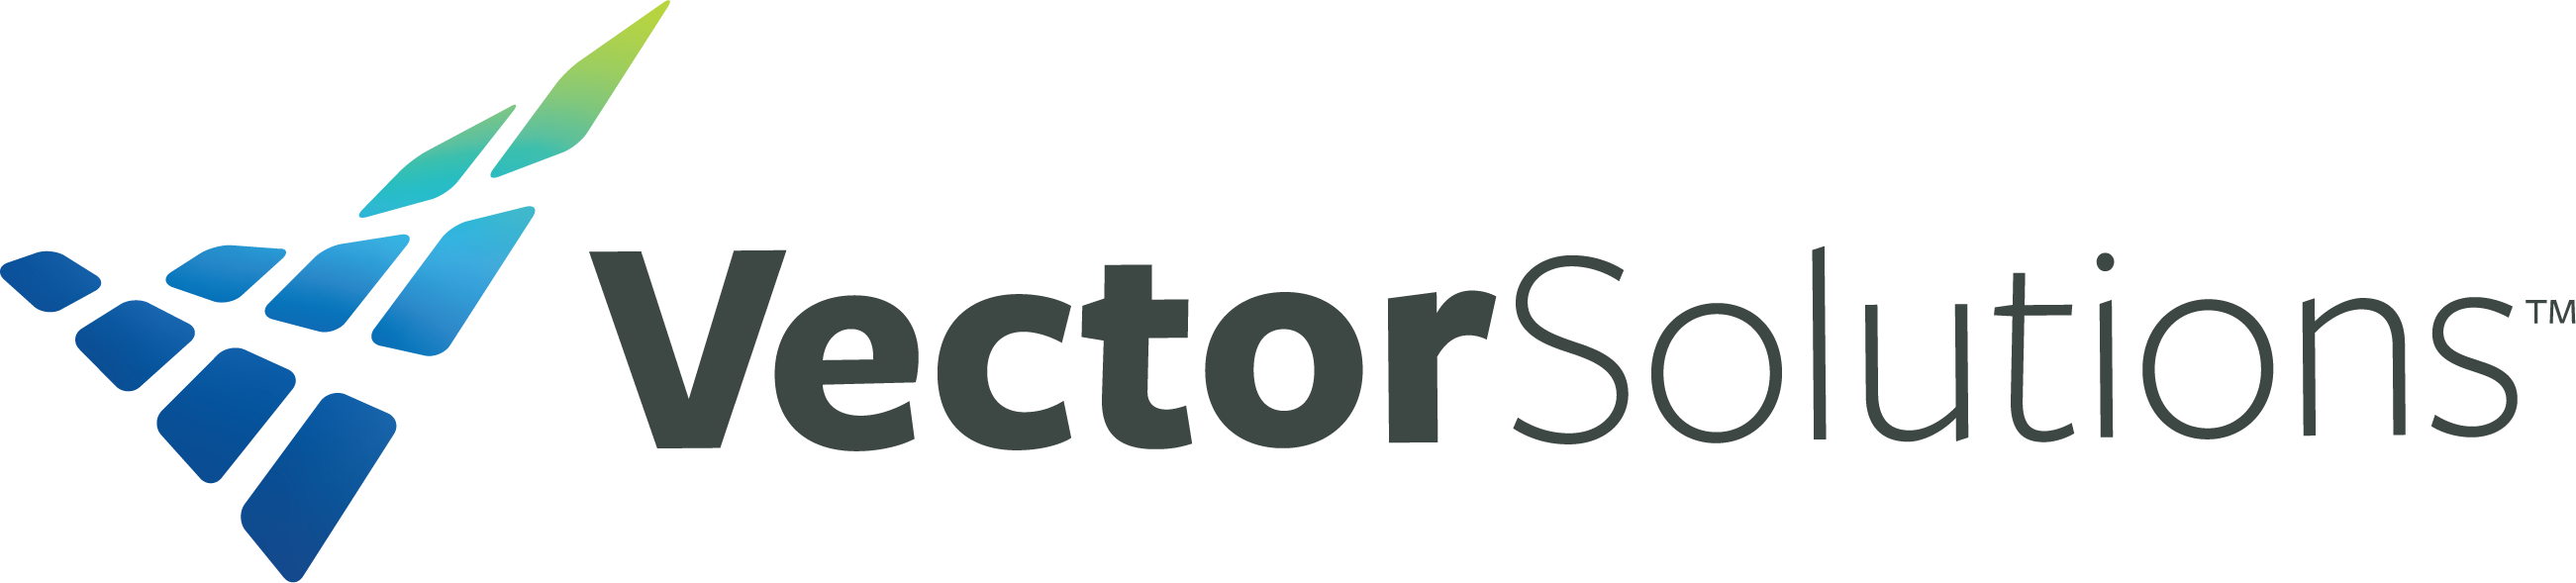 VectorSolutions_Logo_Color (1).png